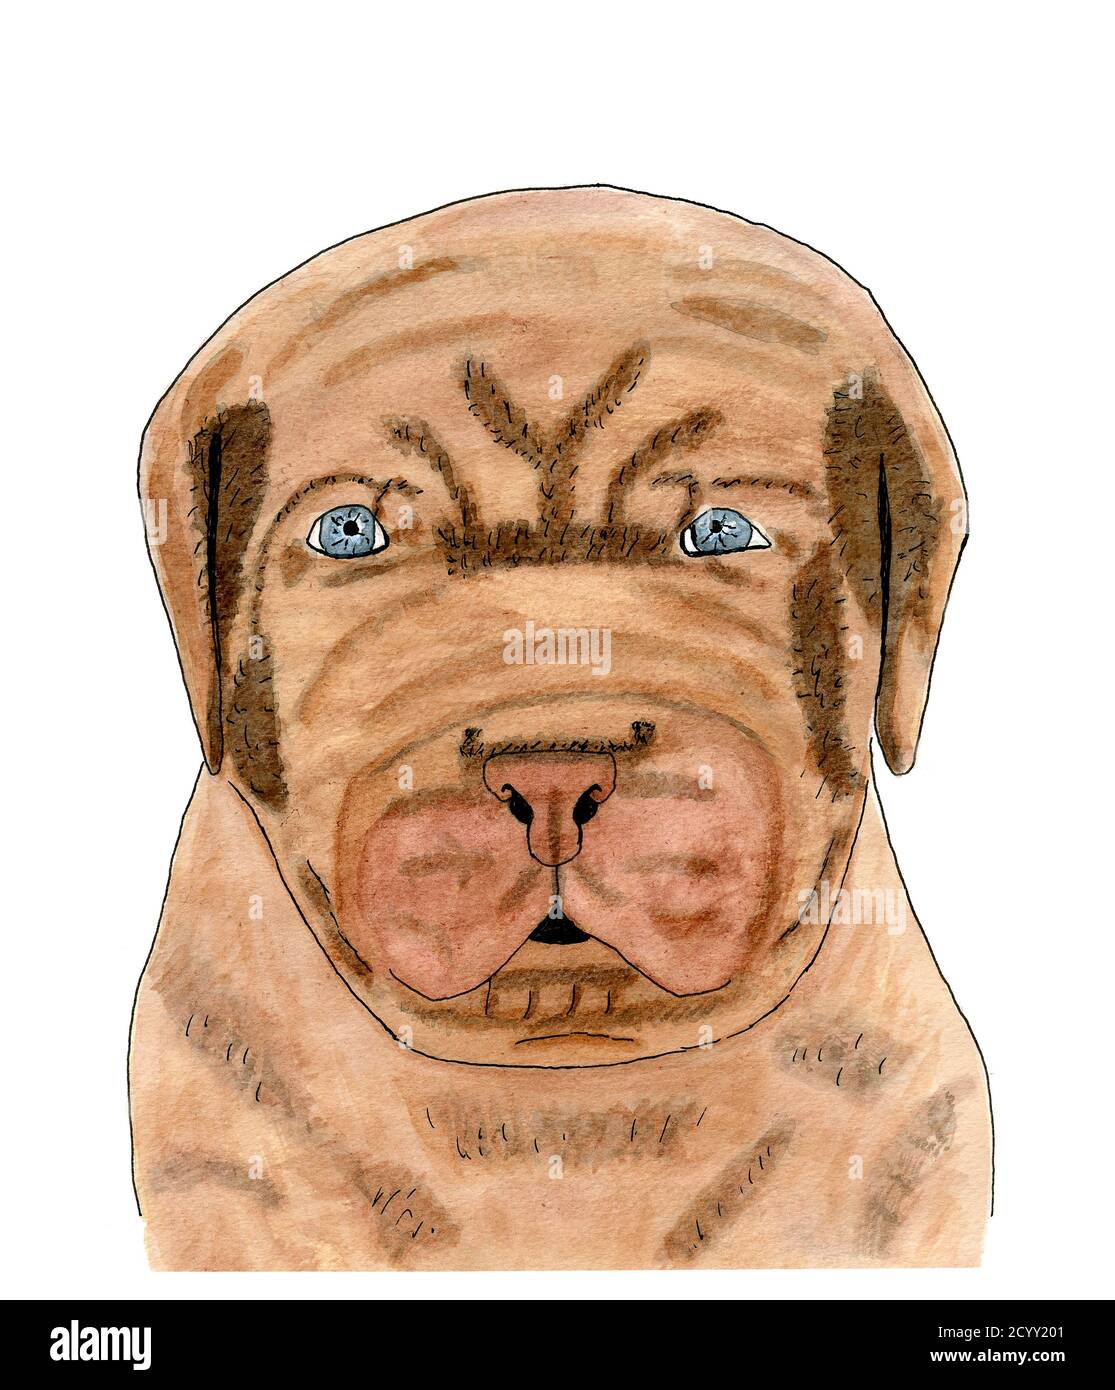 Cane francese Mastiff cucciolo illustrazione acquerello. Il cucciolo ha gli occhi blu luminosi e un sacco di rughe in questo ritratto di animali domestici. Foto Stock